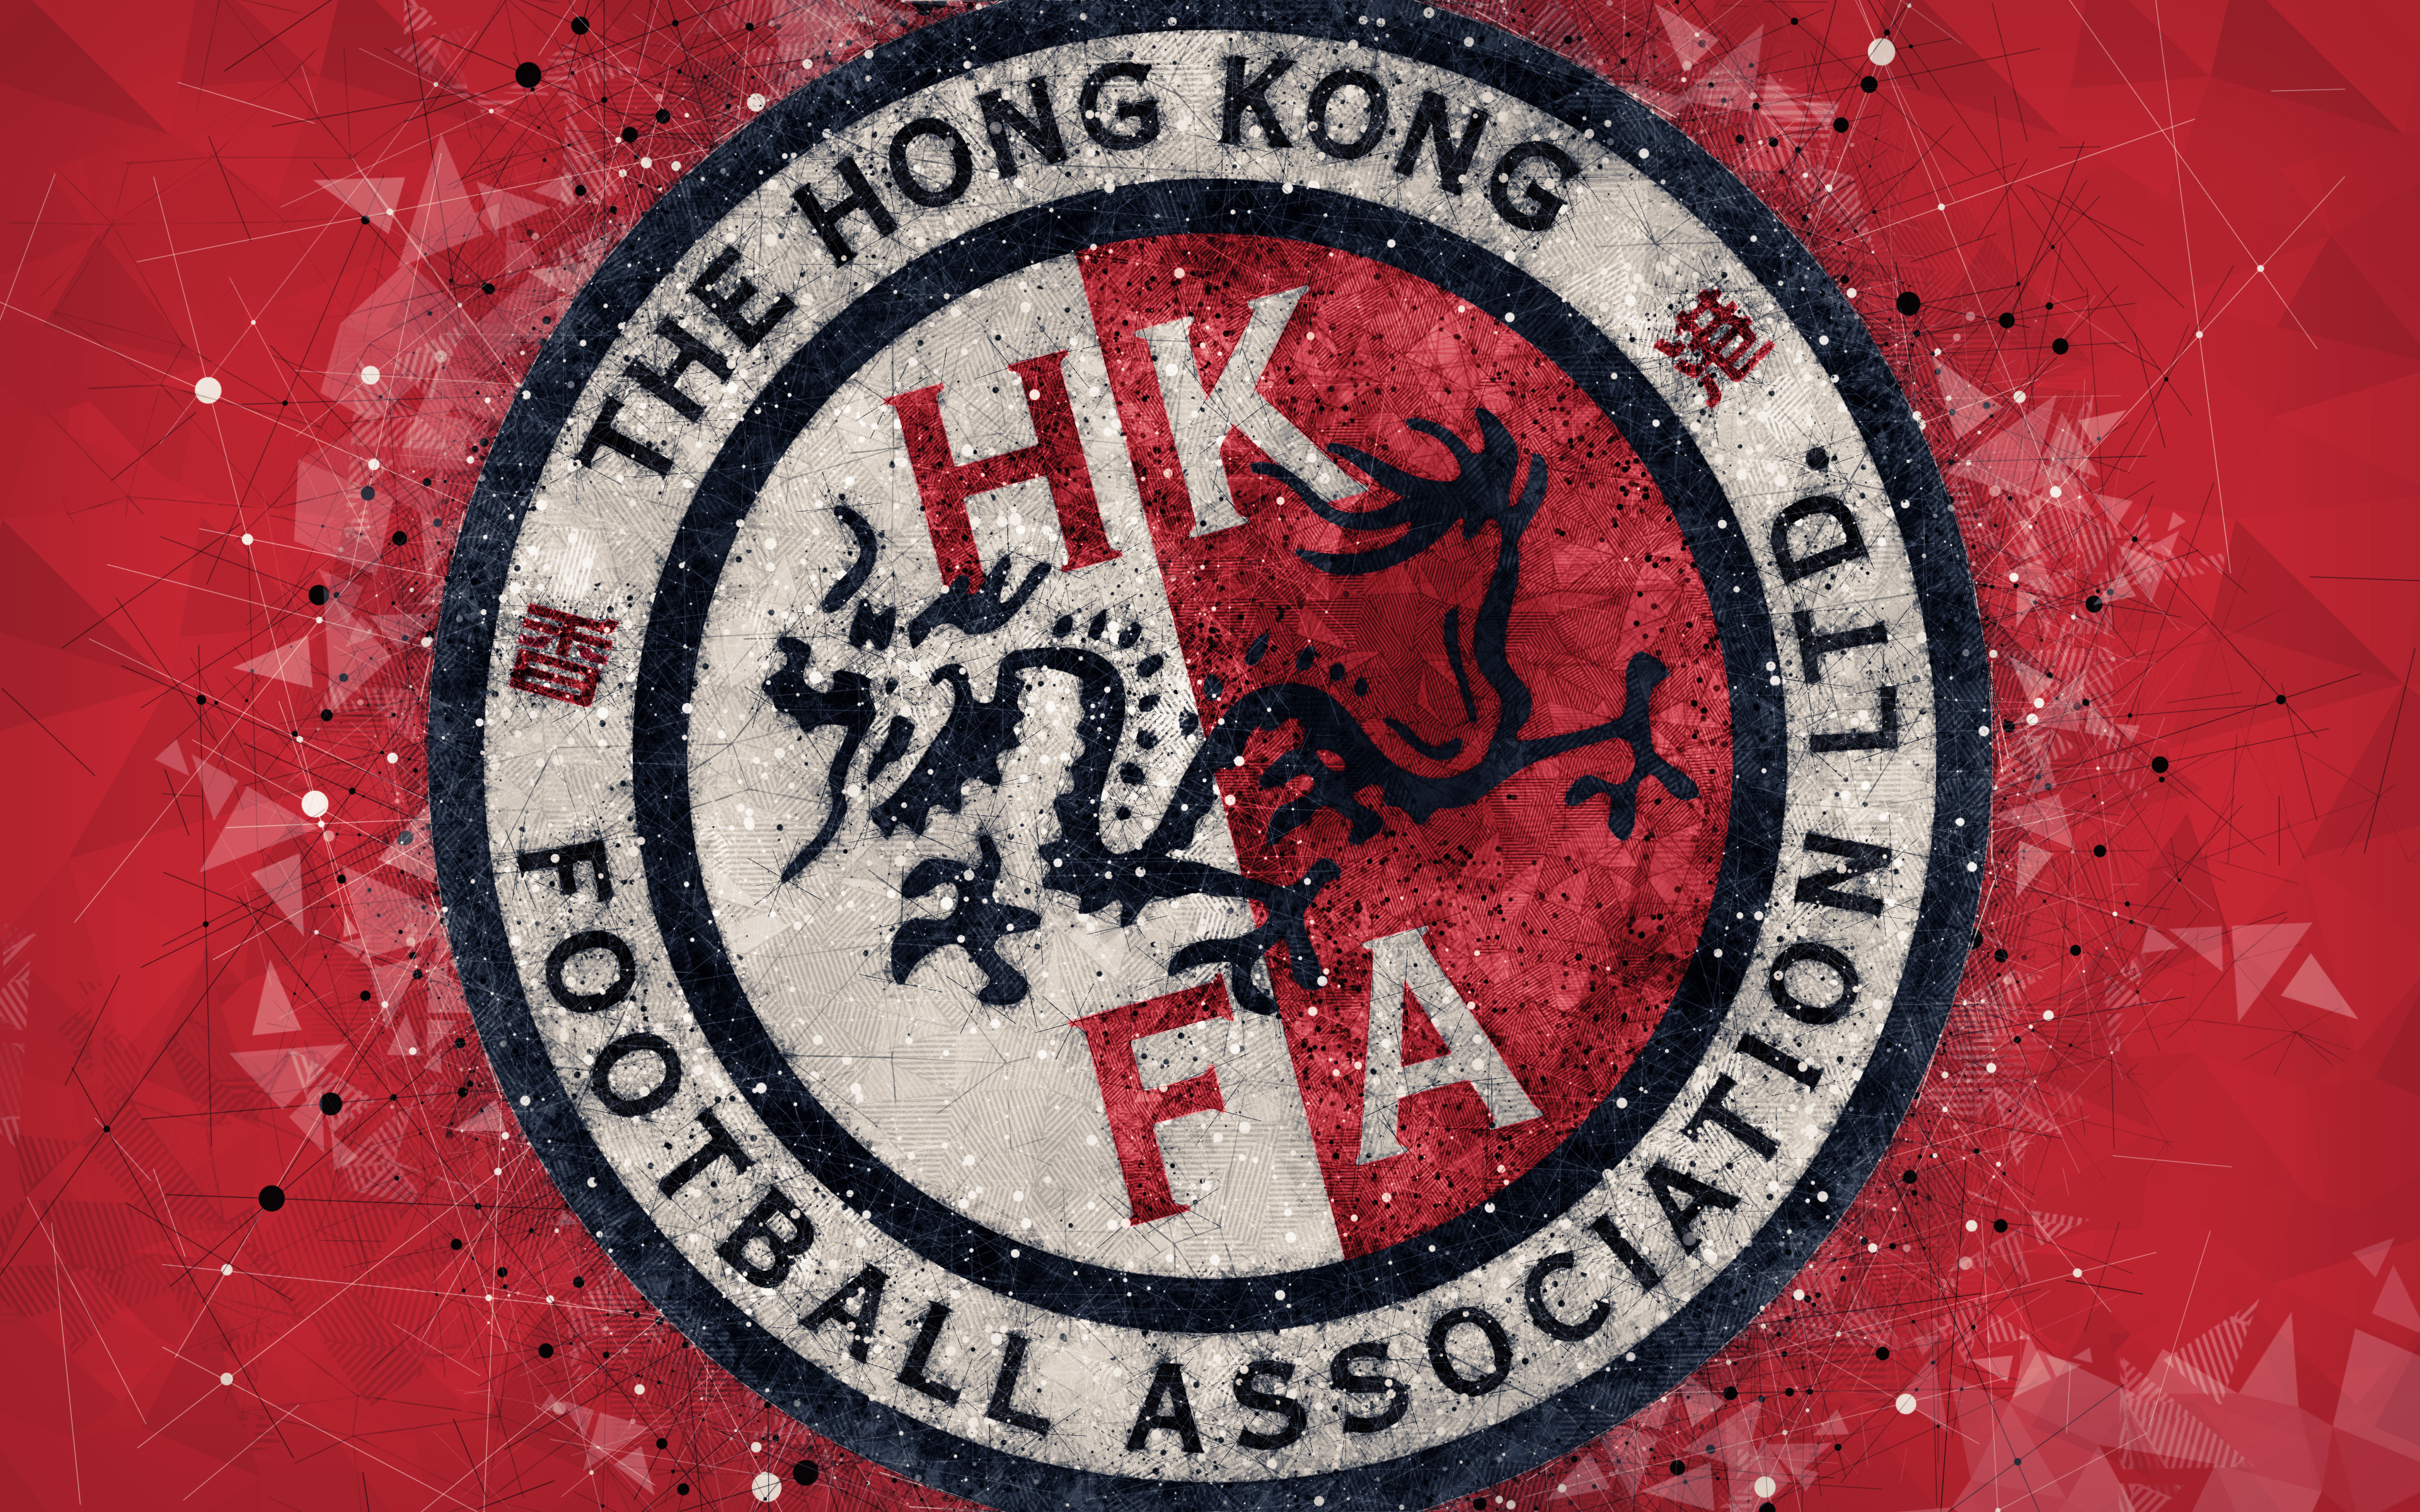 451552 Обои и Сборная Гонконга По Футболу картинки на рабочий стол. Скачать  заставки на ПК бесплатно